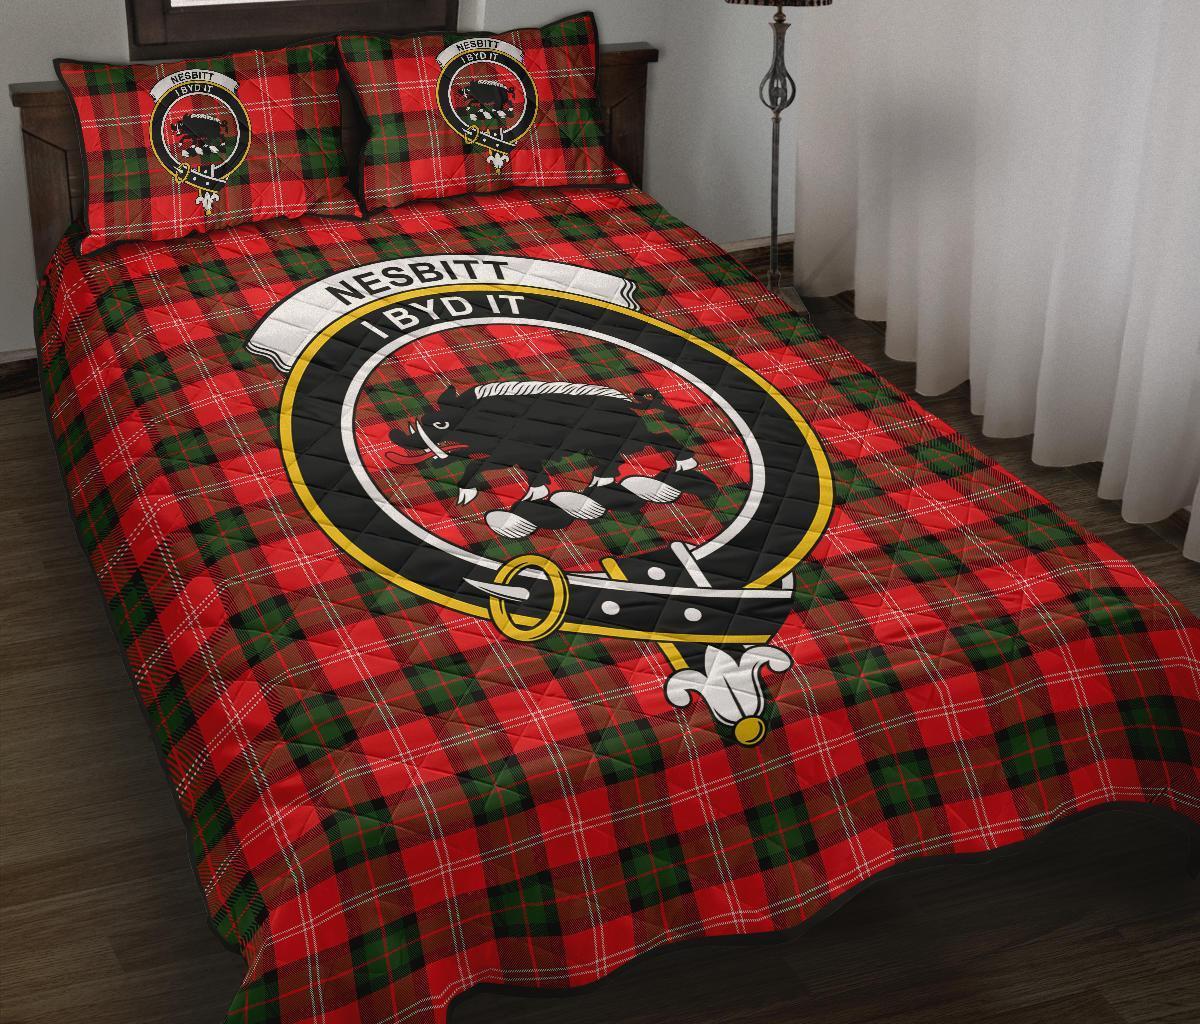 Nesbitt Modern Tartan Crest Quilt Bed Set